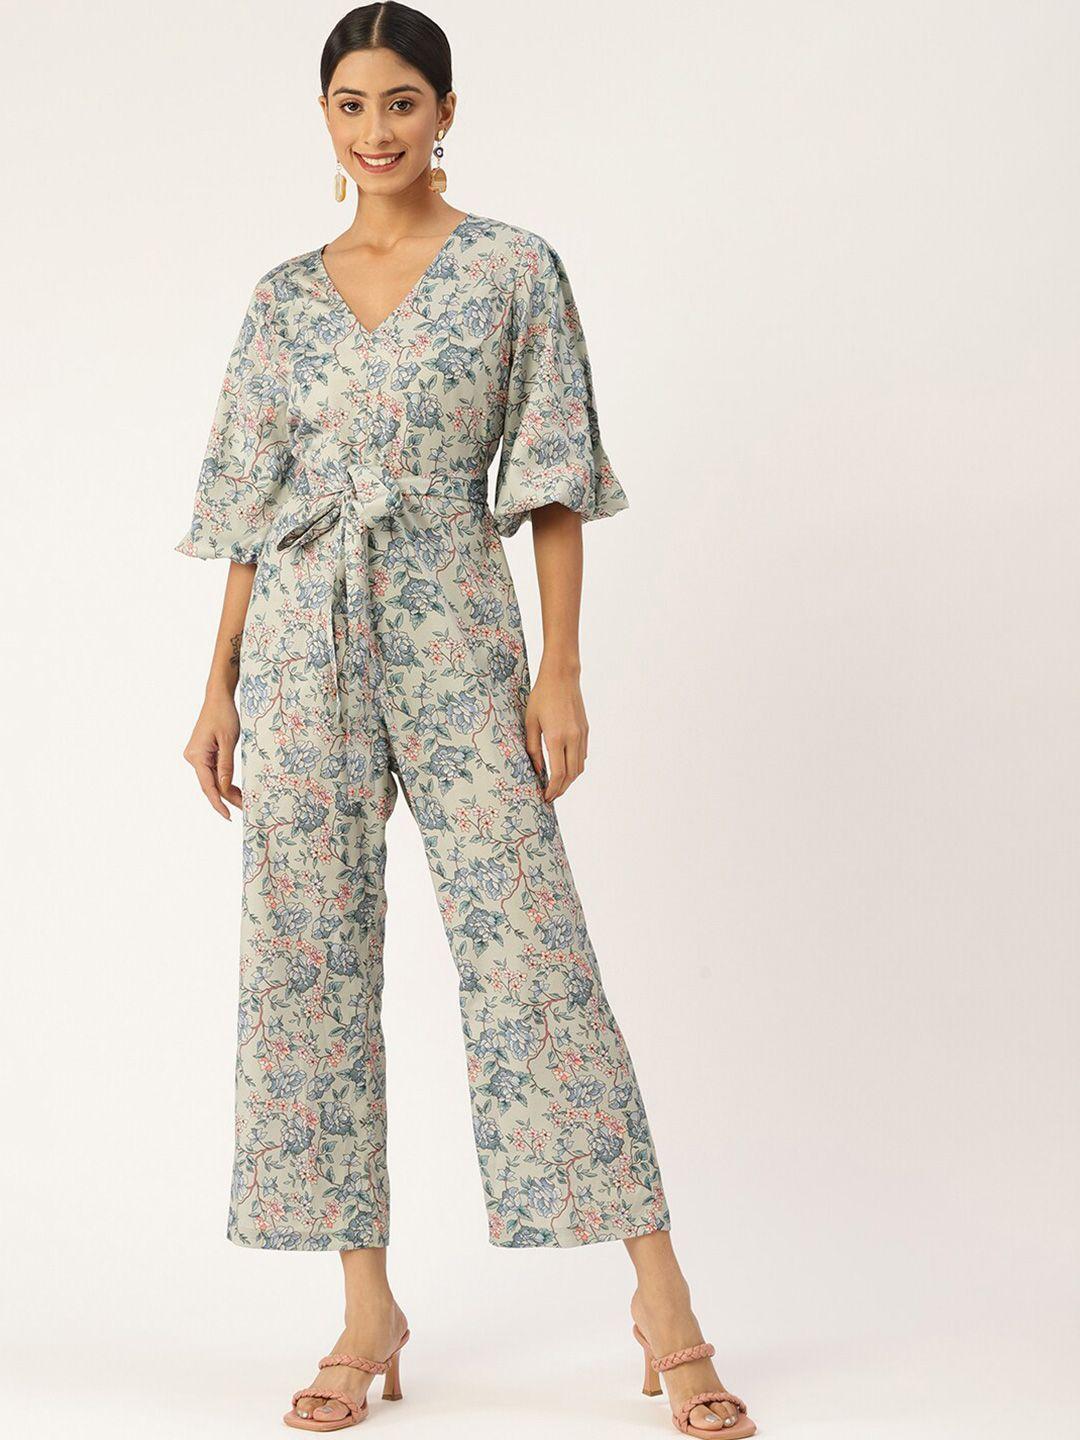 sleek-italia-floral-printed-basic-jumpsuit